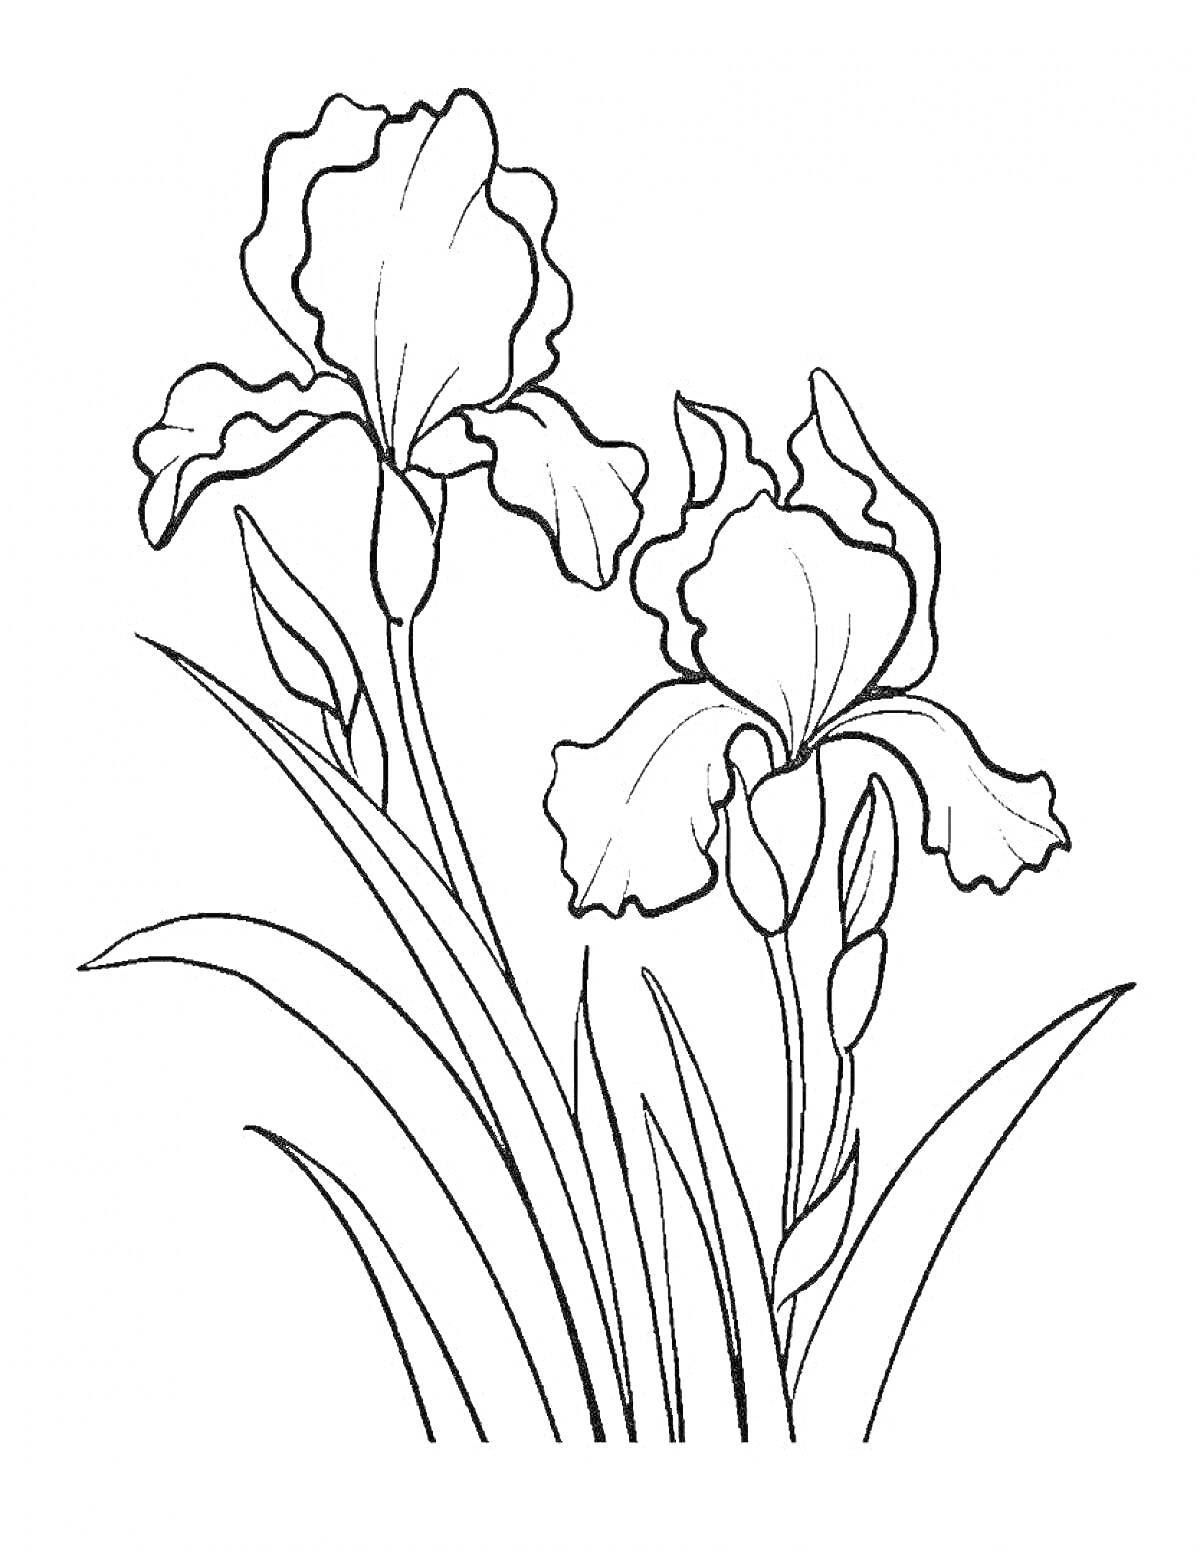 Раскраска Раскраска ирисов с двумя цветами и листьями